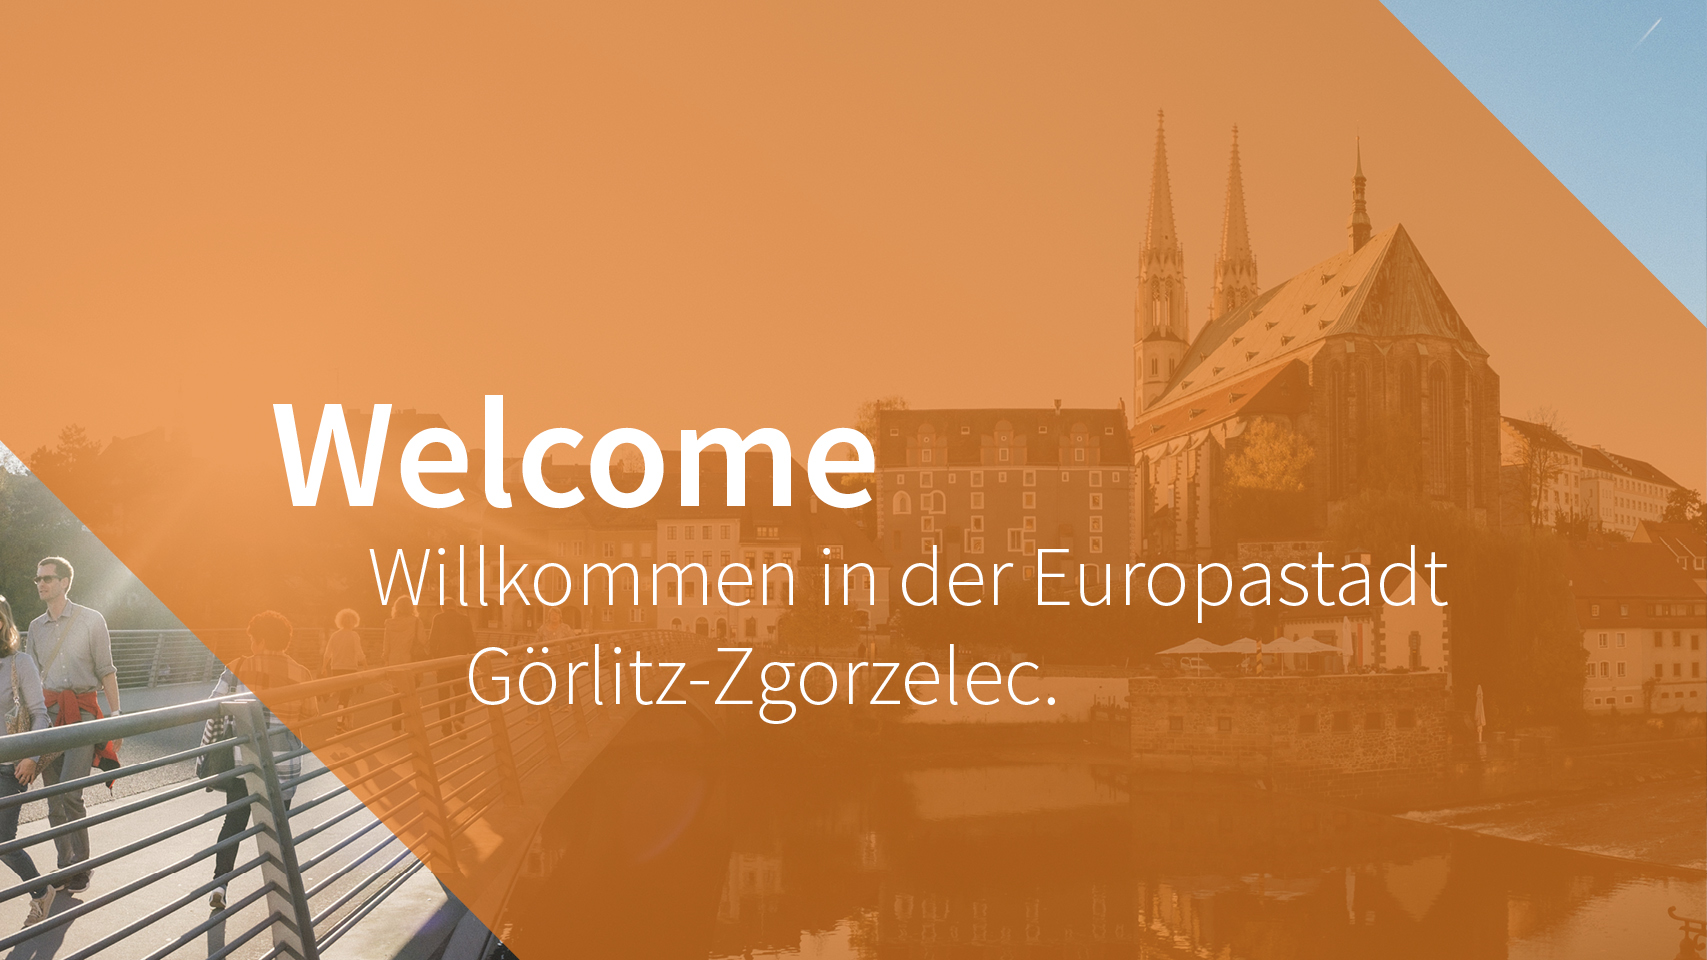 (c) Welcome-goerlitz-zgorzelec.com